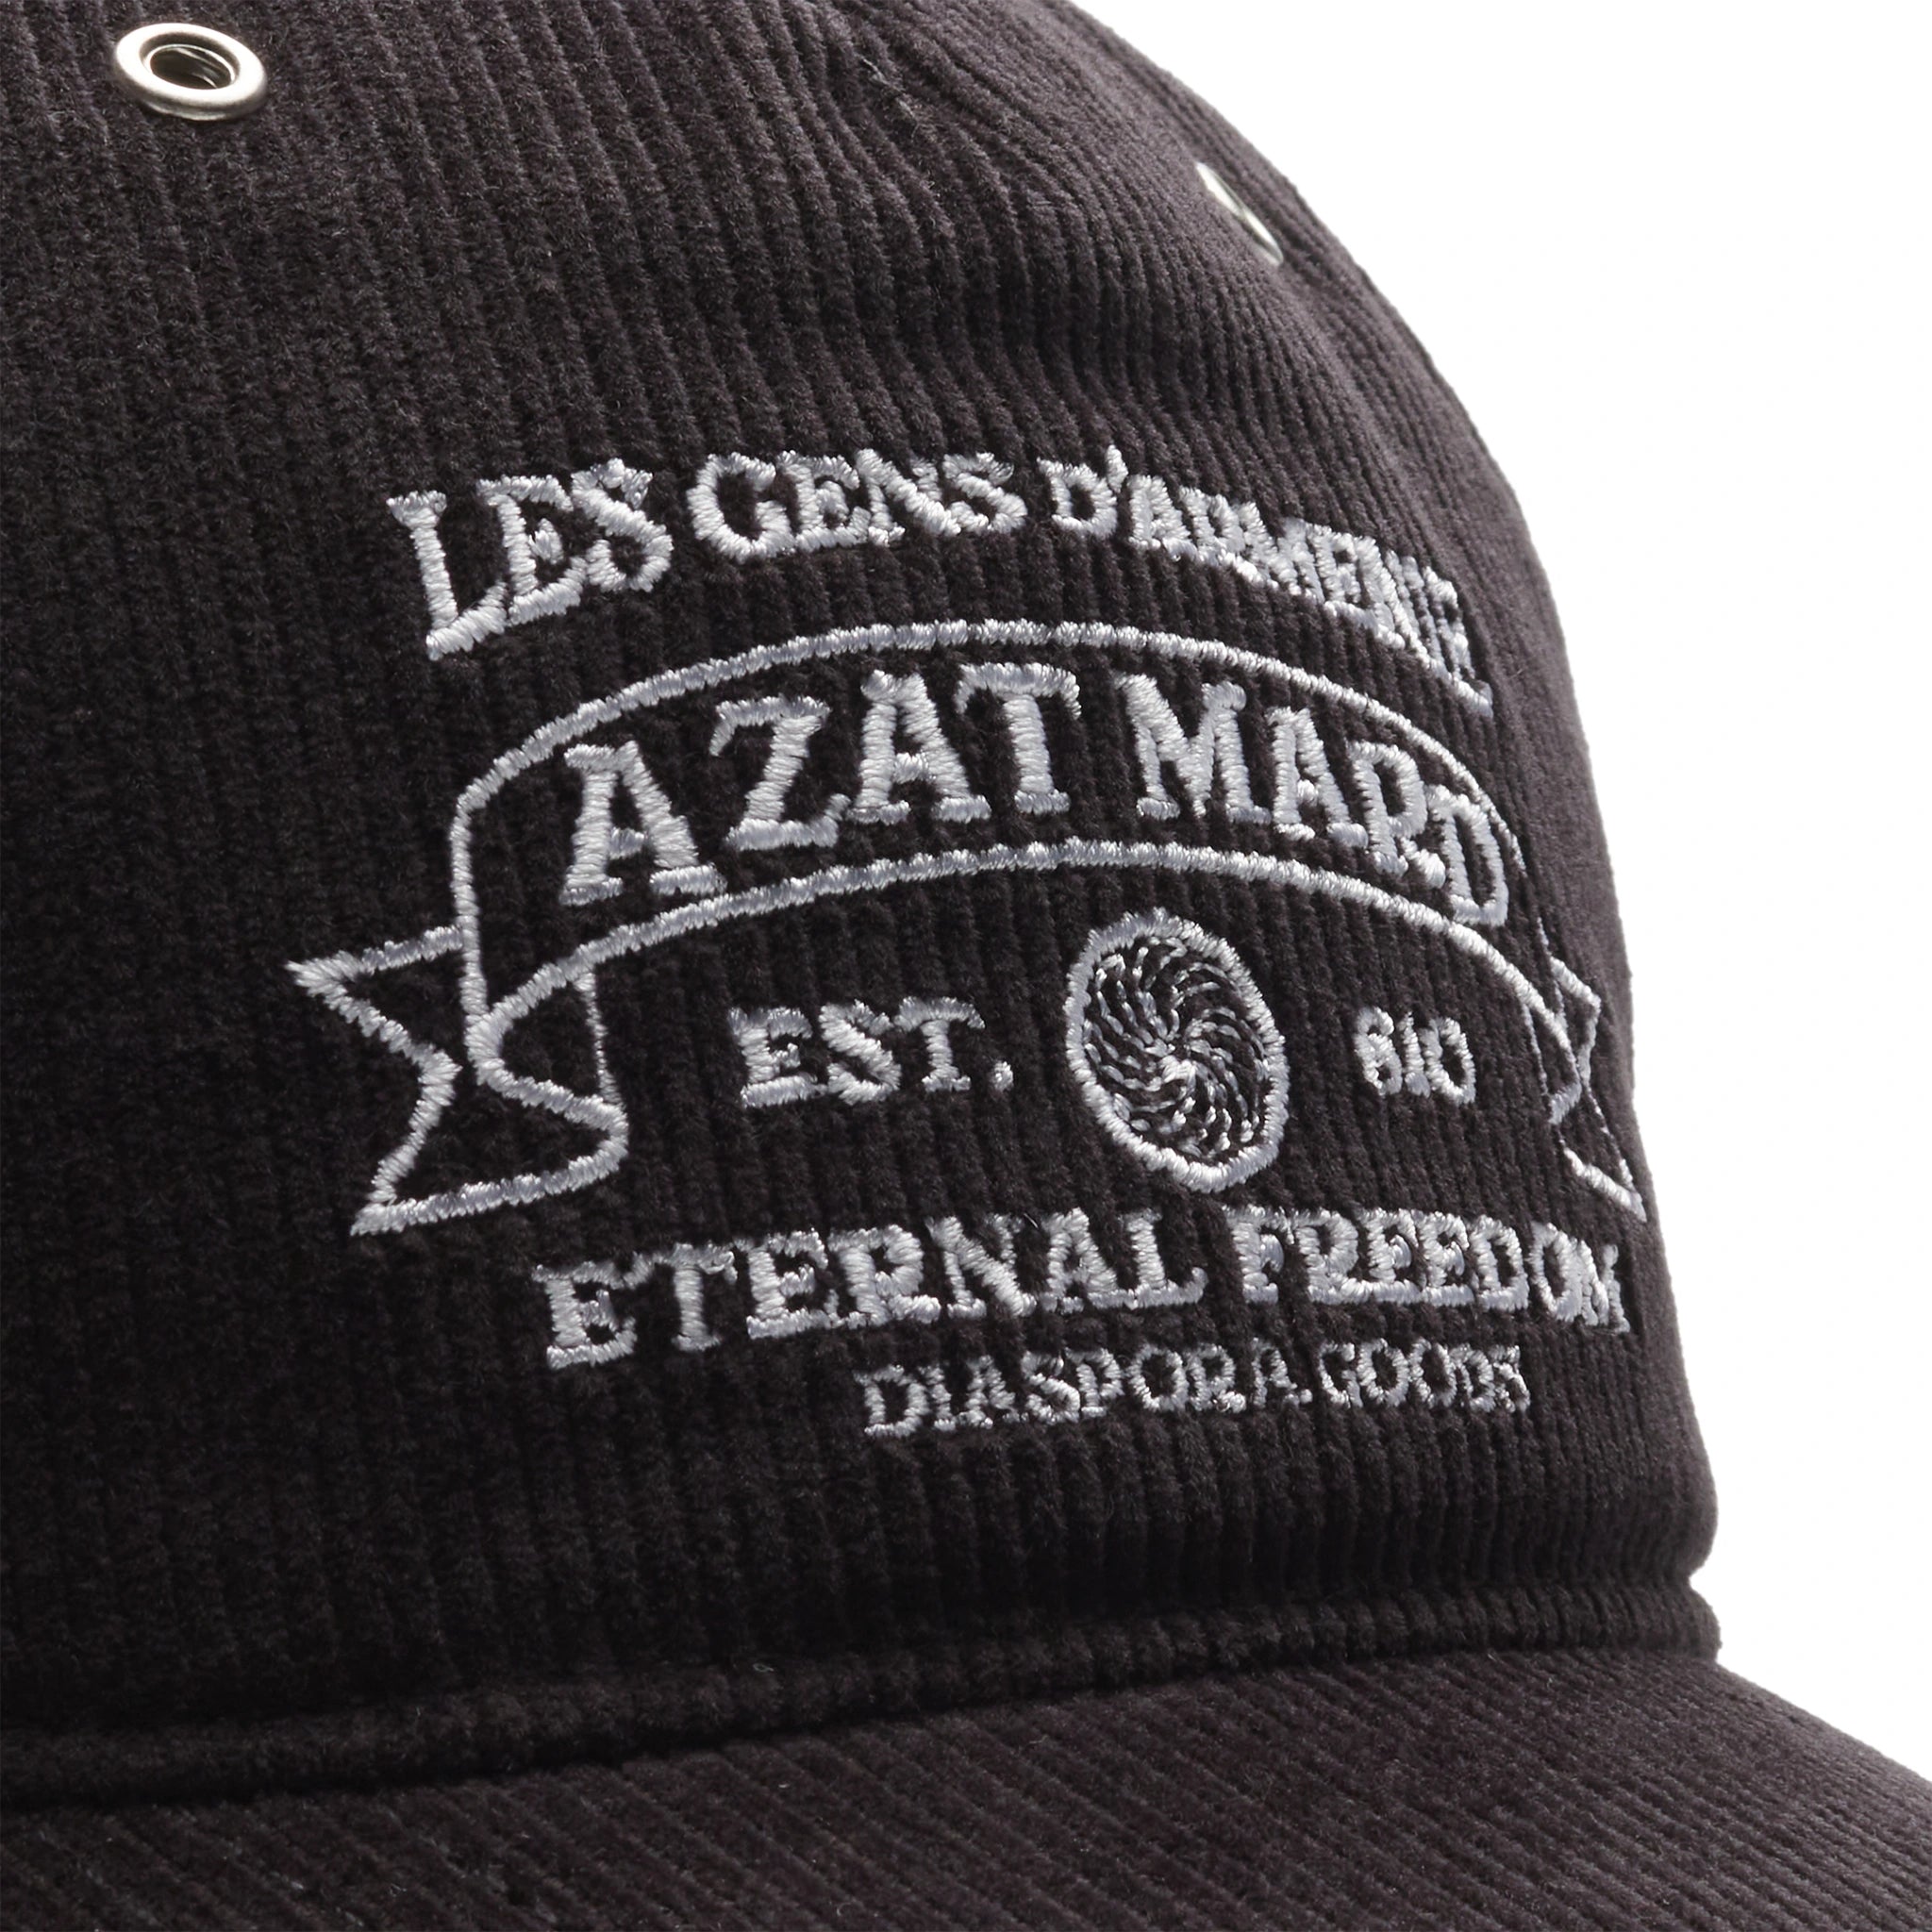 Azat Mard Eternal Freedom Black Baseball Cap